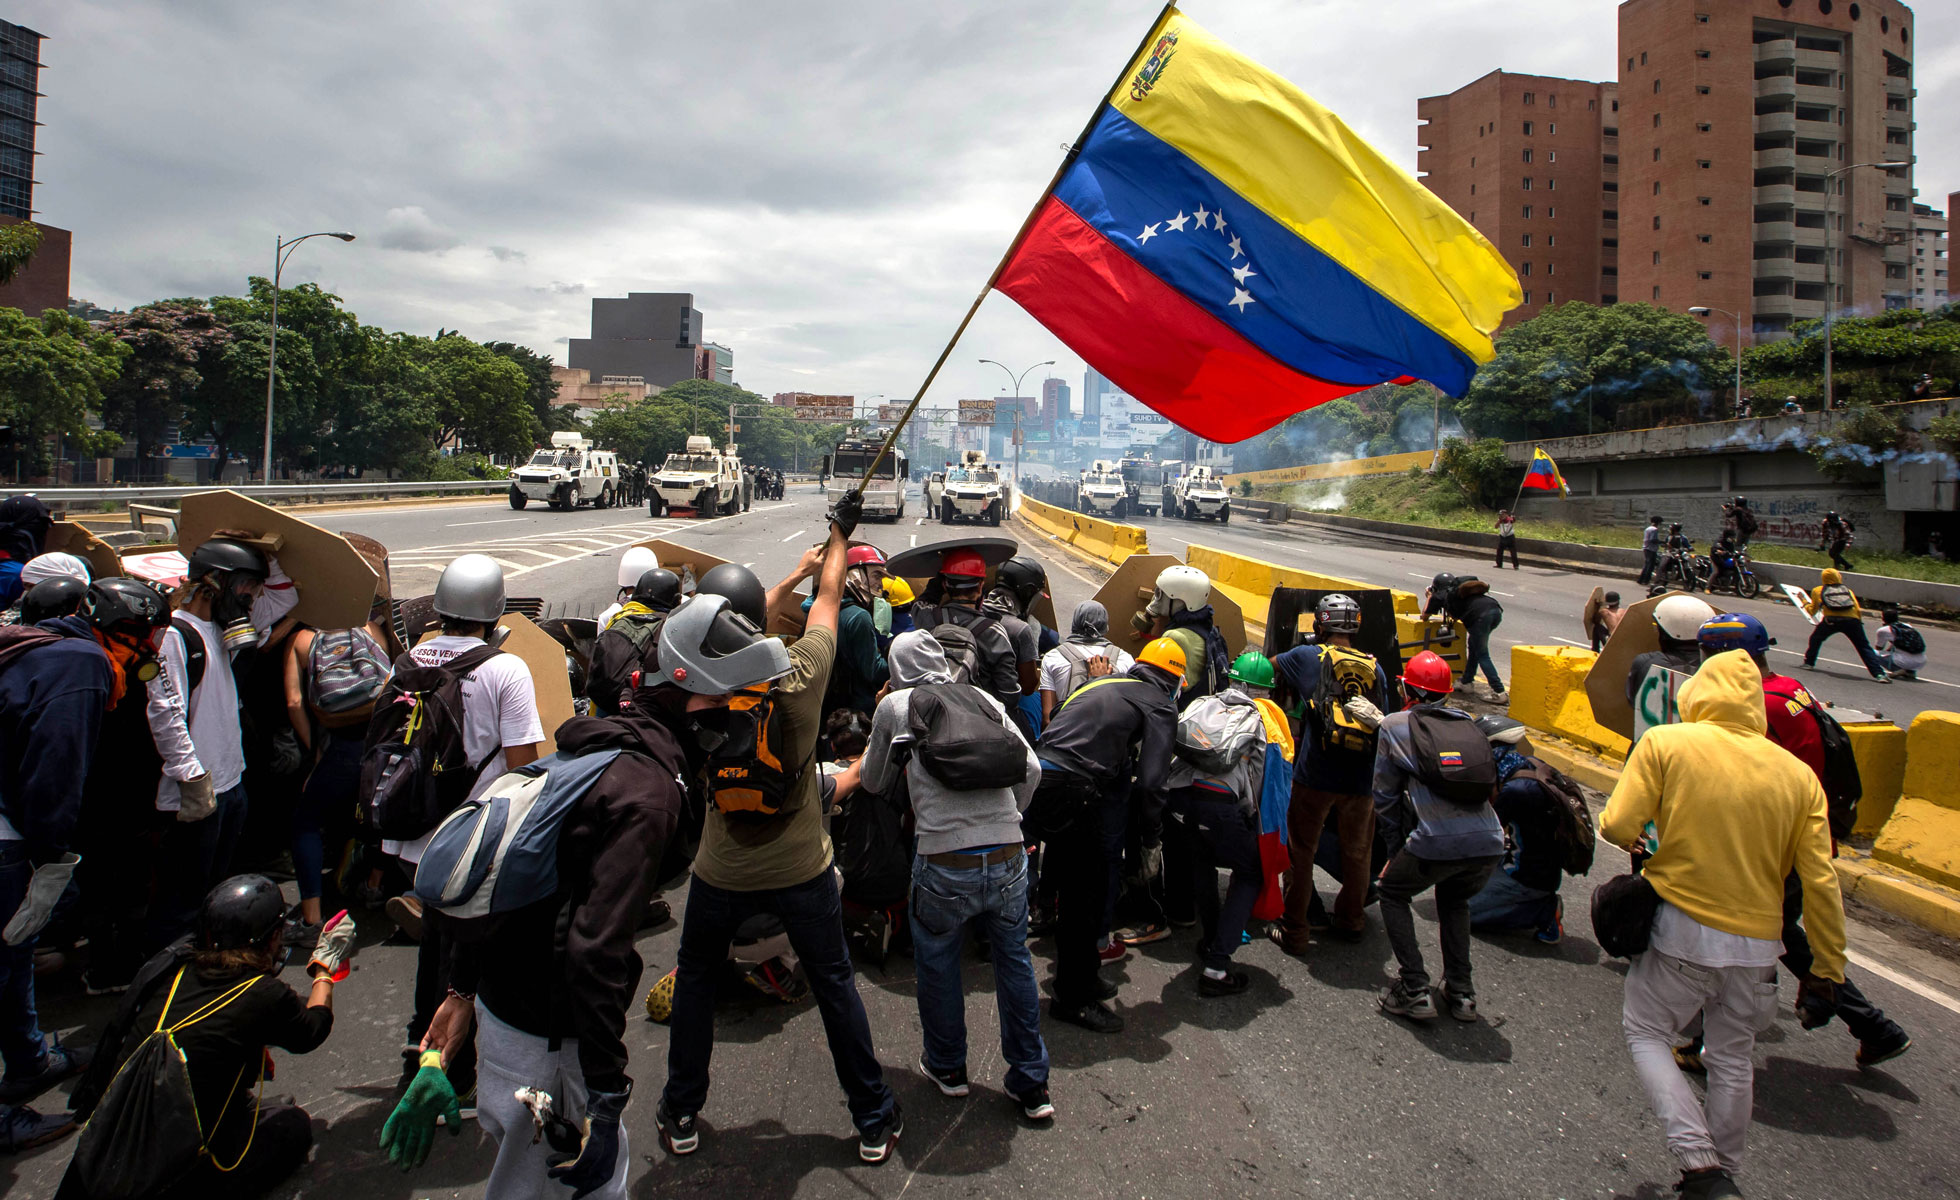 3174111Protestas-Venezuela-Oposicion-Marcha-EFE